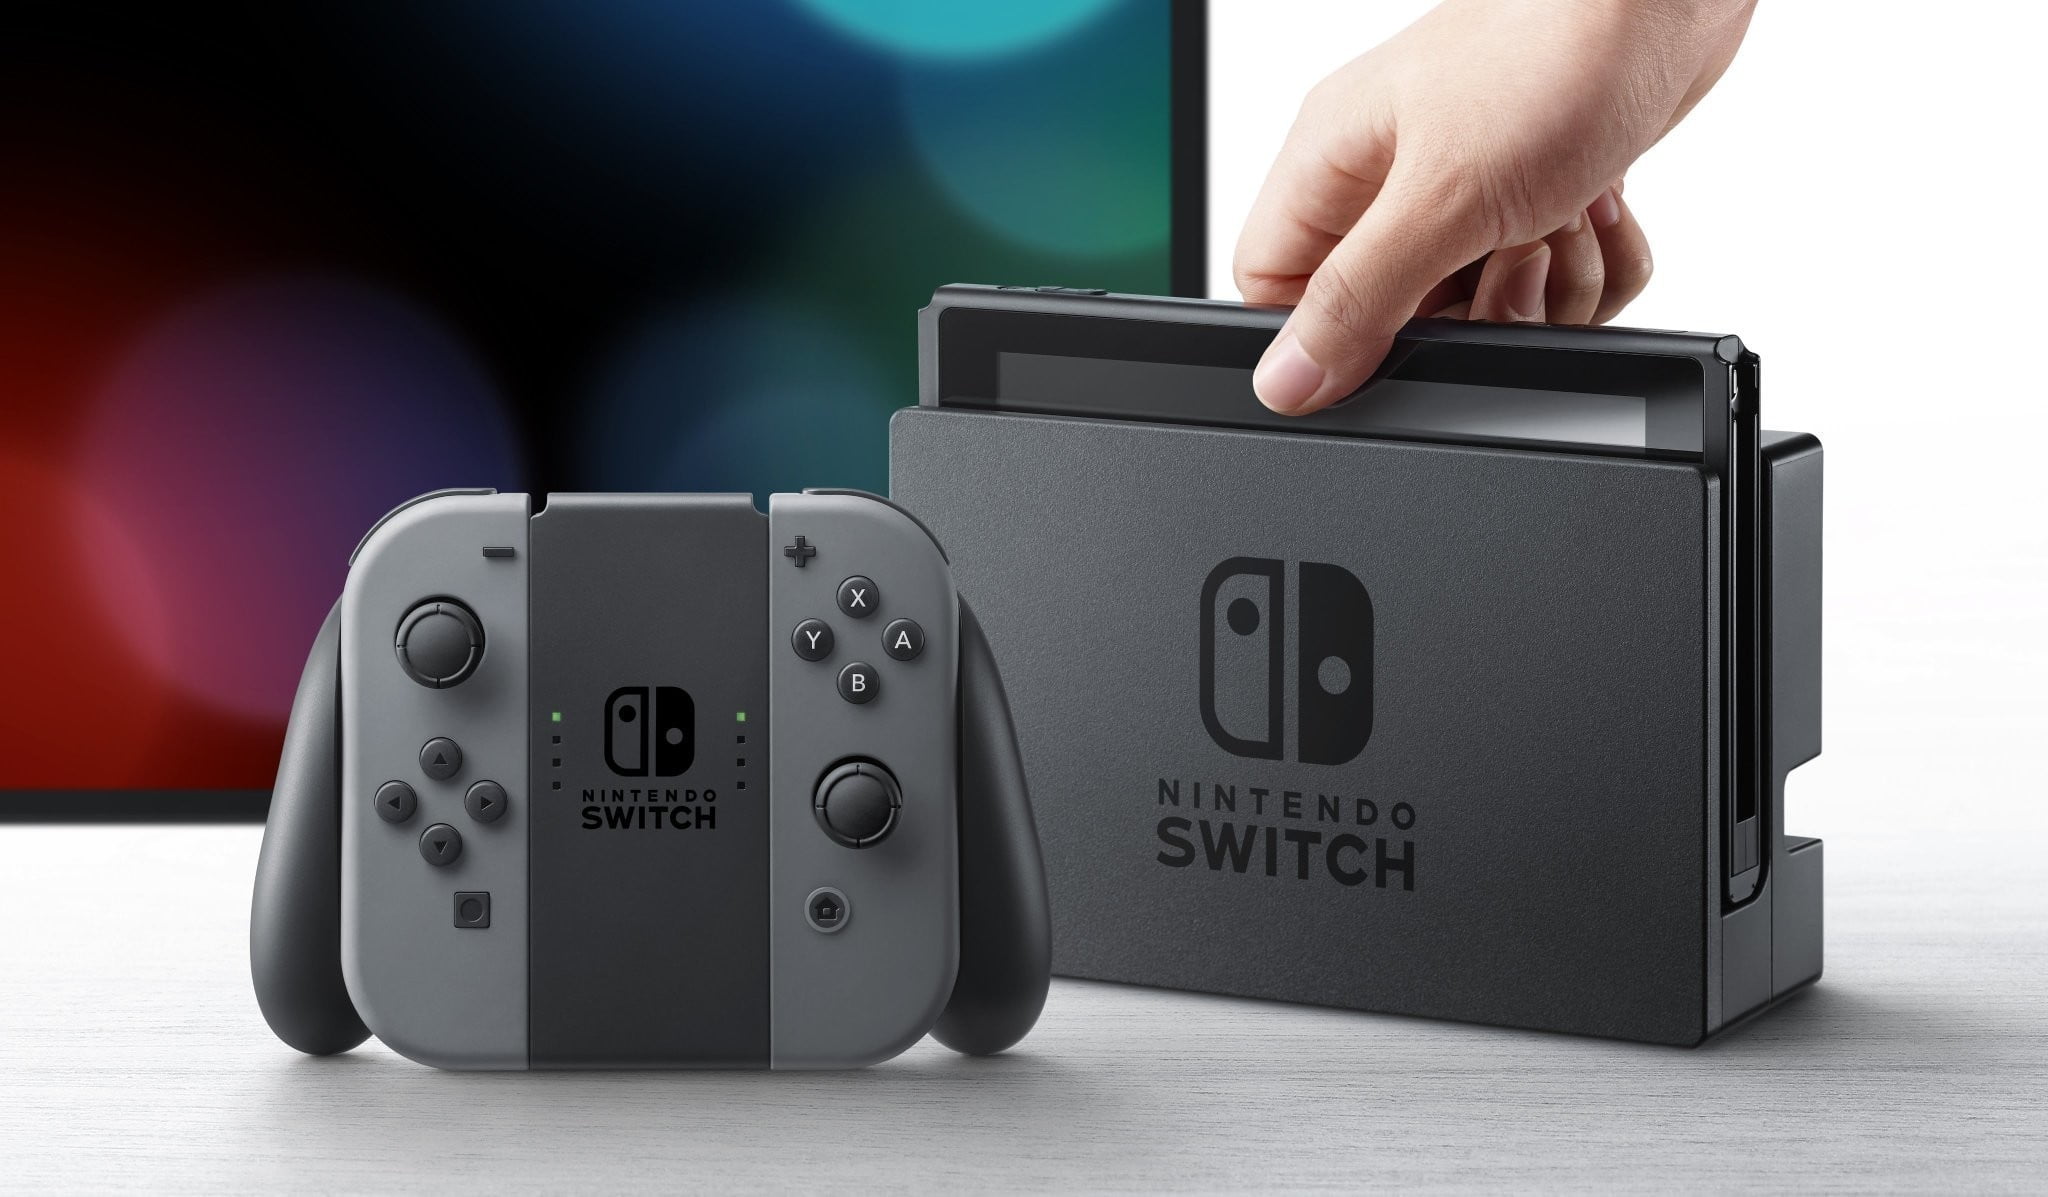  Original Nintendo Switch inbound